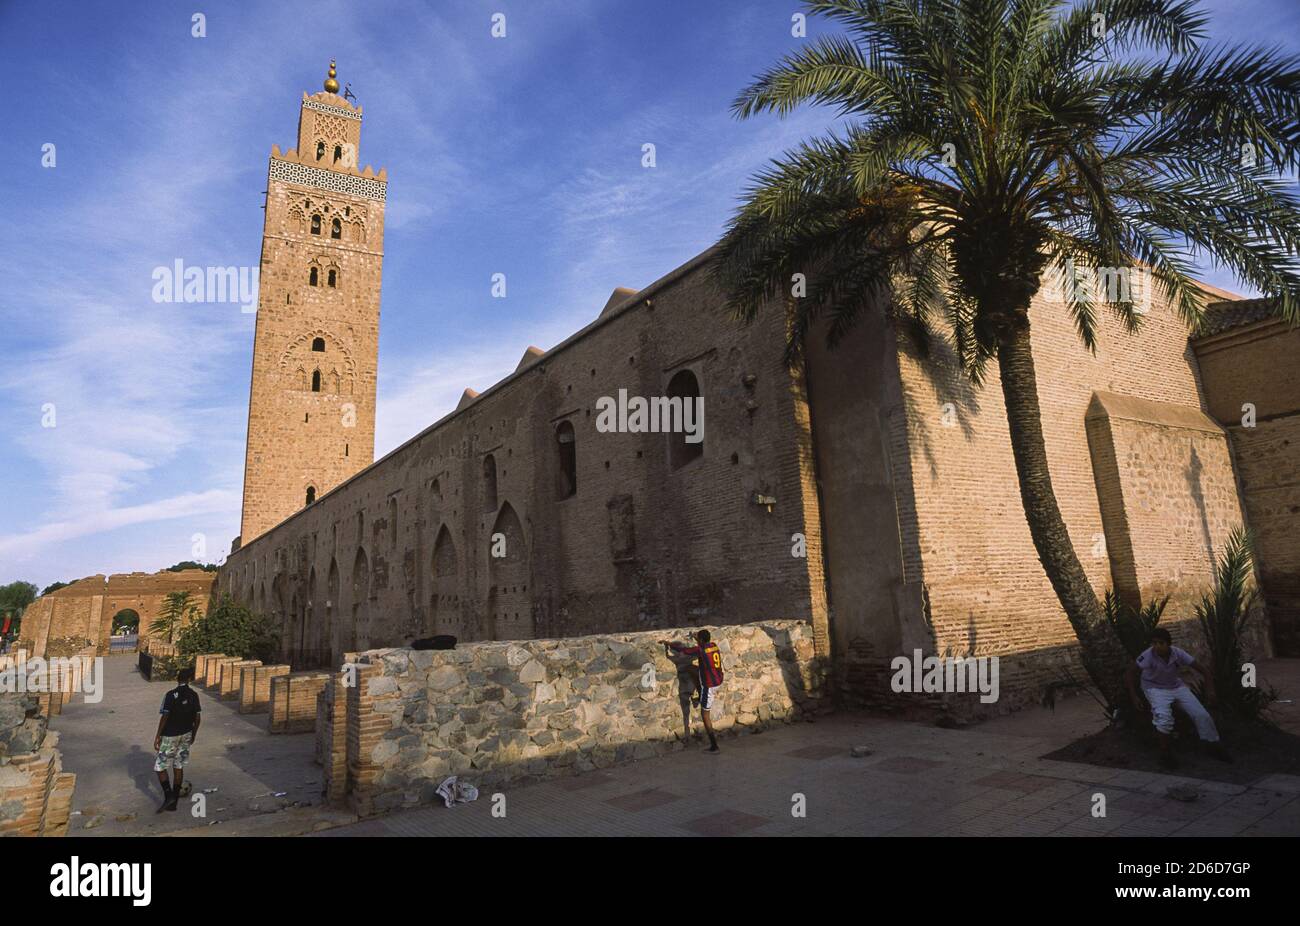 24.12.2010, Marrakesch, Marrakesch-Safi, Marokko - Blick auf die Koutoubia-Moschee aus dem 12. Jahrhundert mit Minarett und einer Palme, der größten Moschee in der Ci Stockfoto